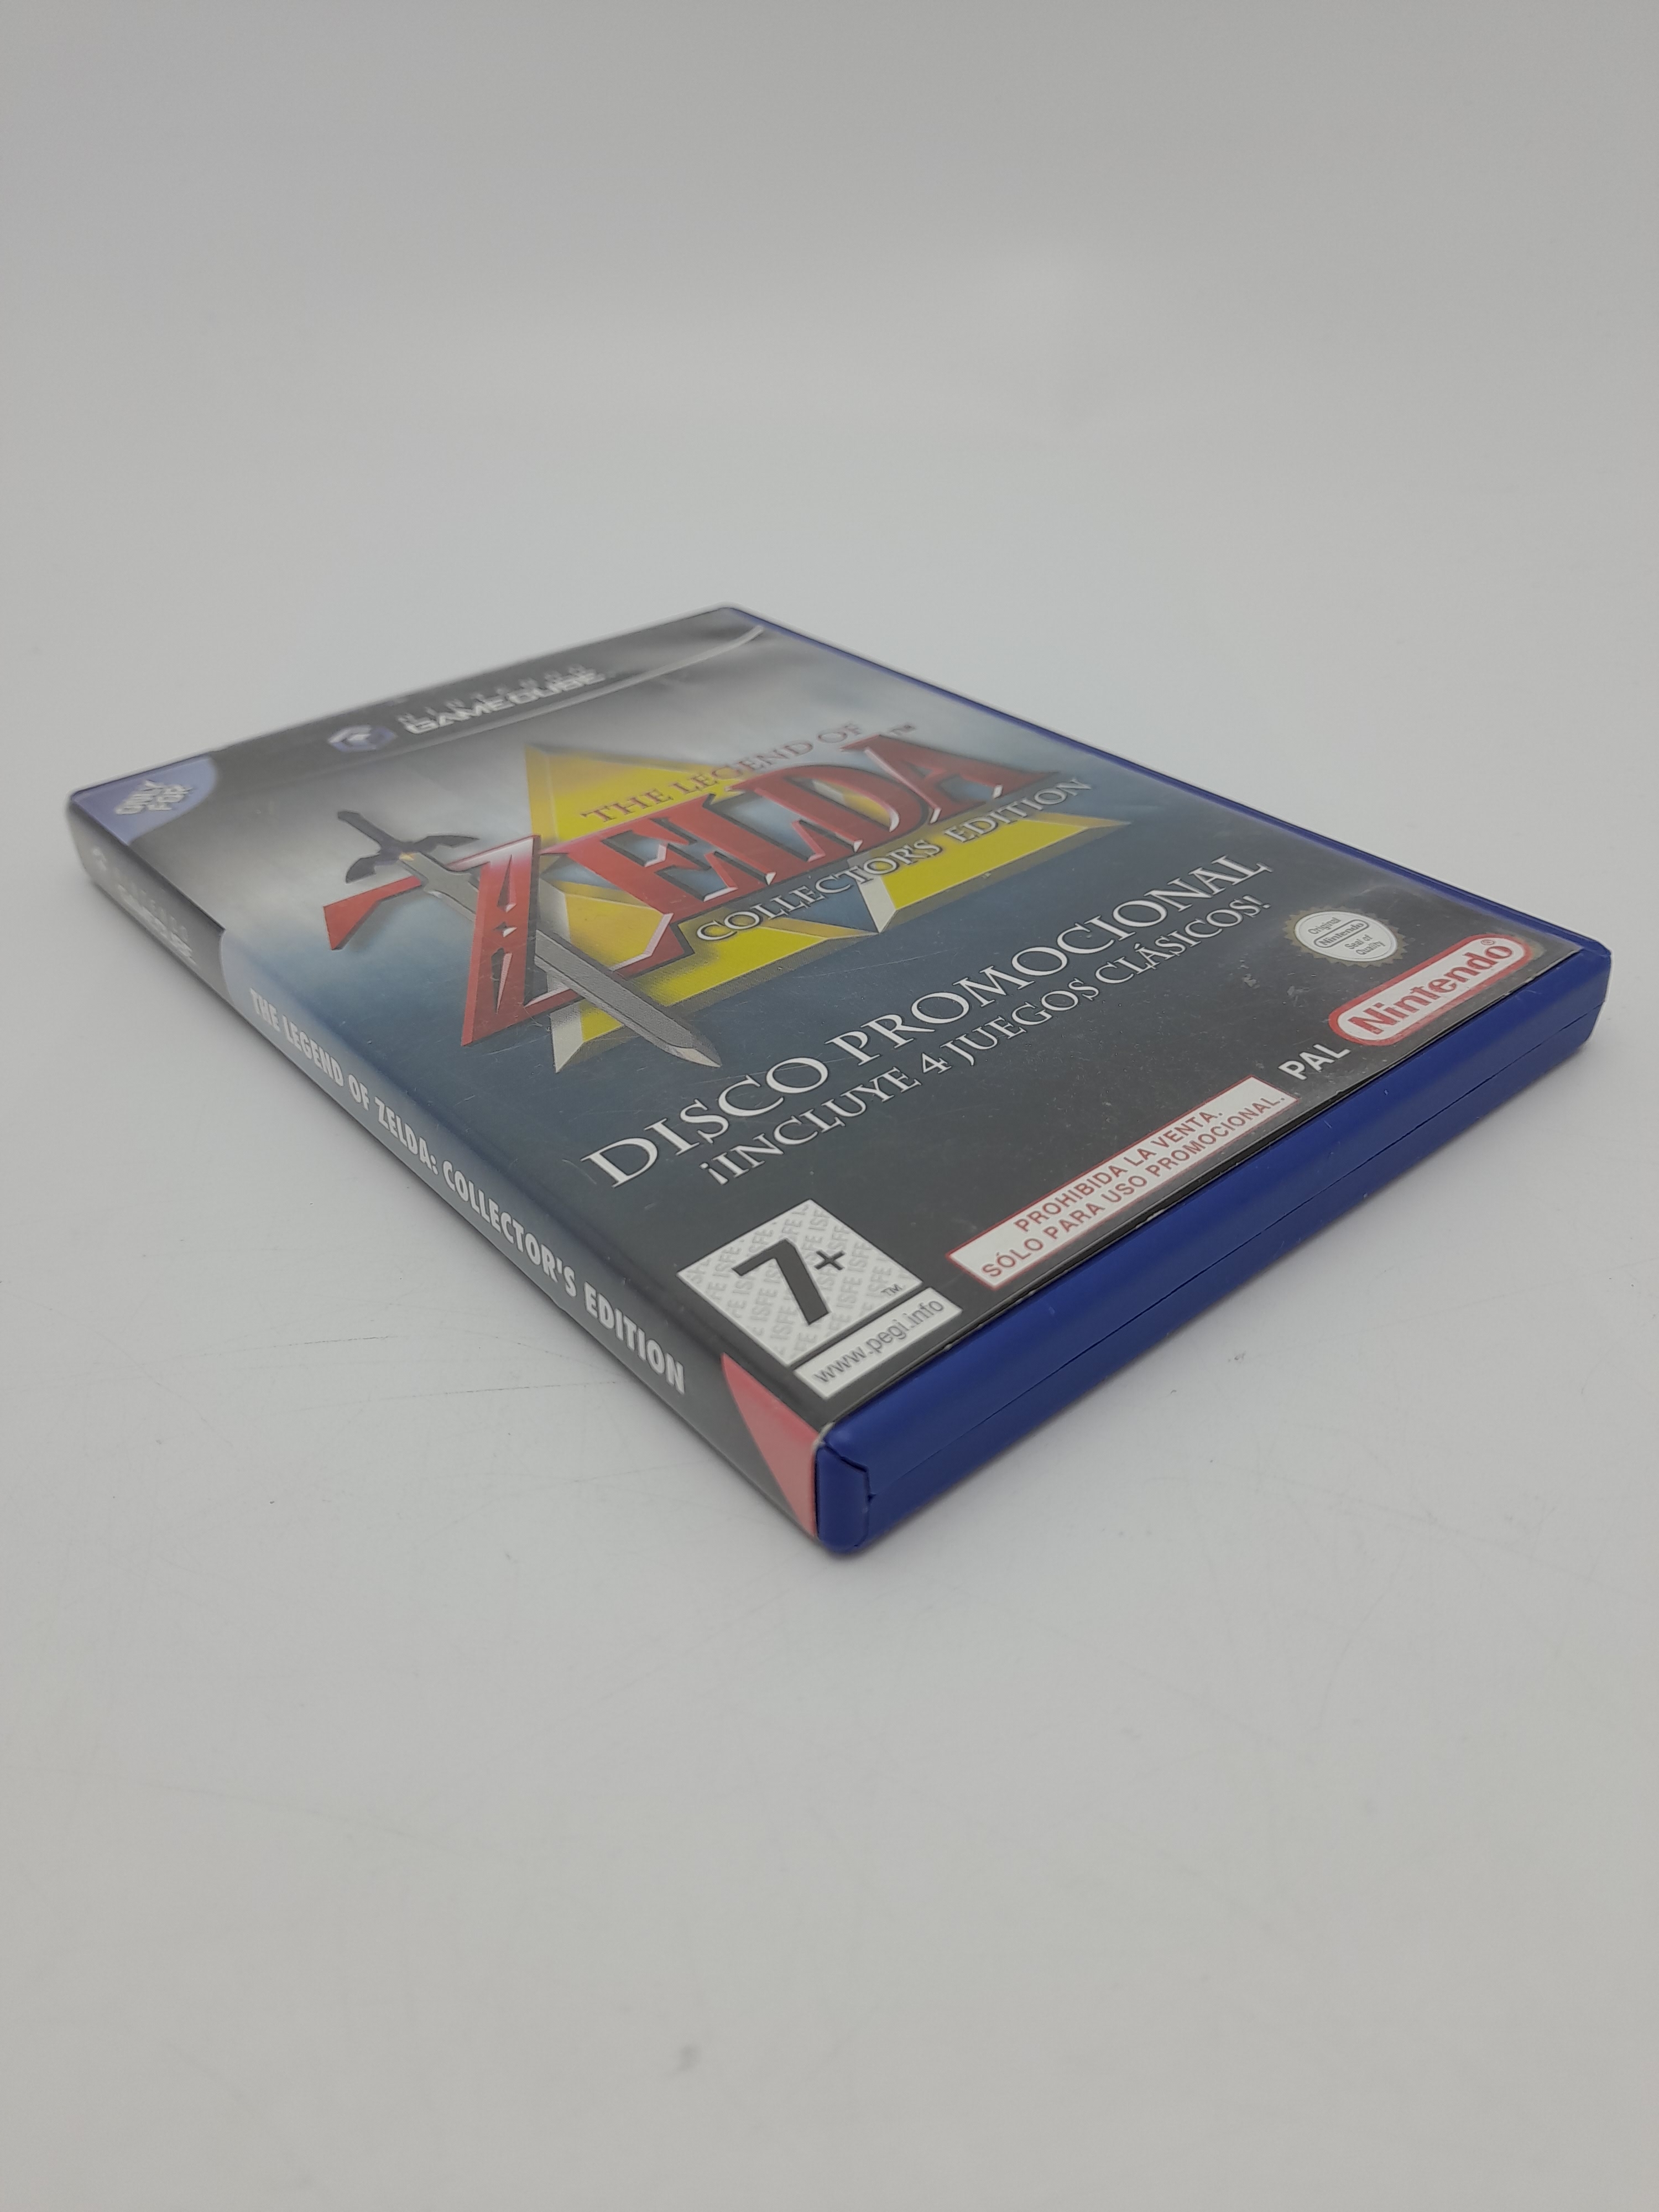 Foto van The Legend of Zelda: Collector’s Edition Compleet Spaanstalig